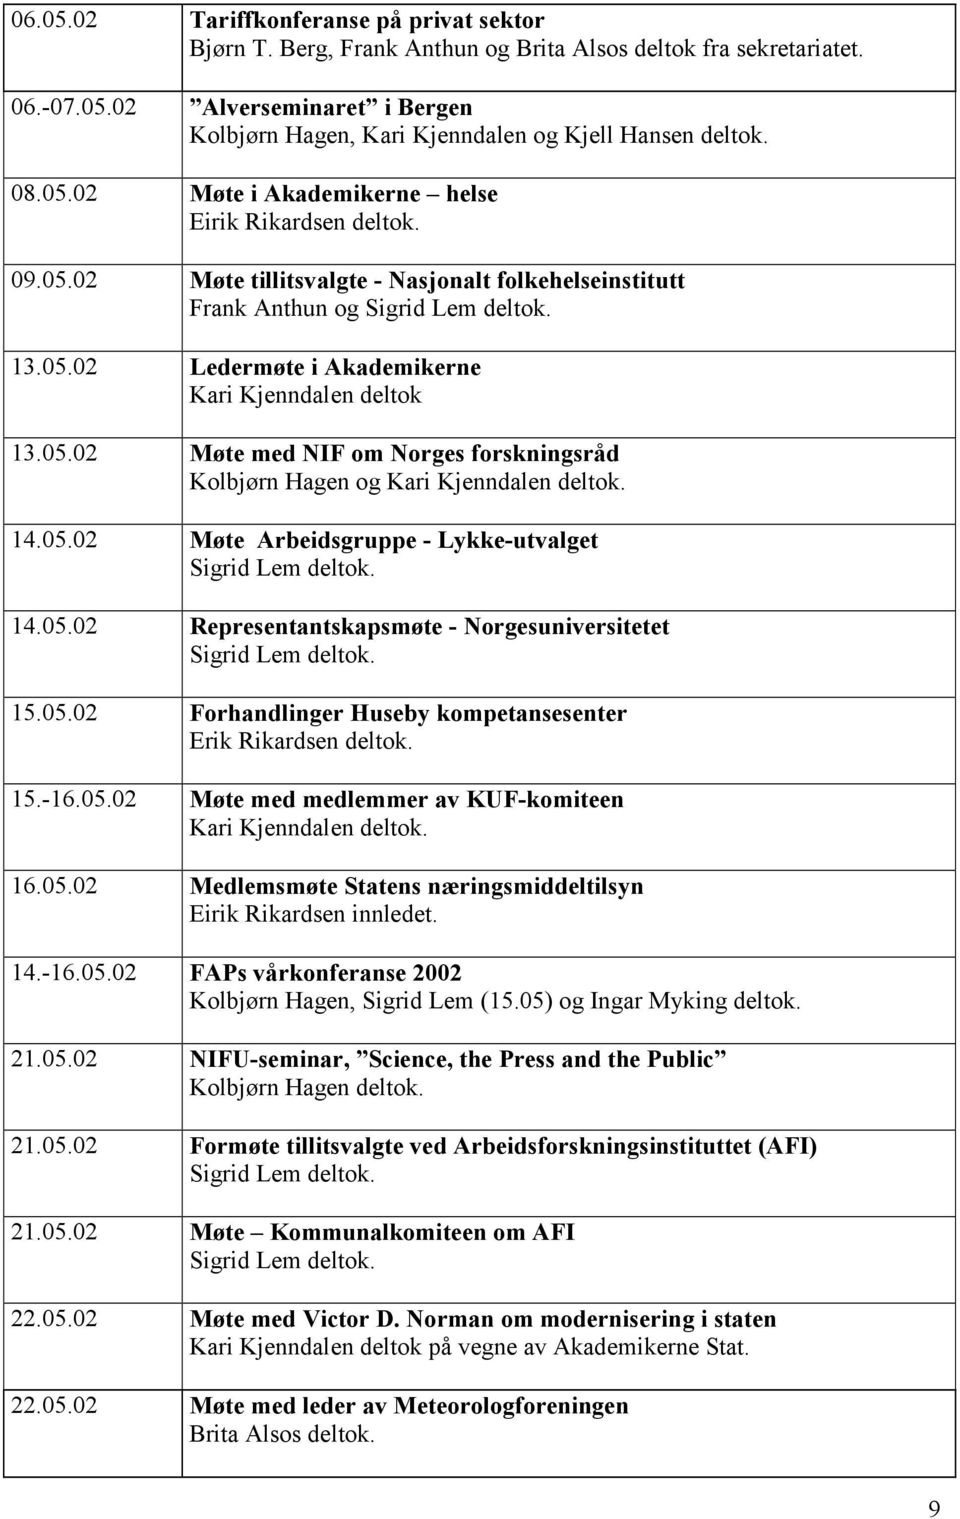 05.02 Møte Arbeidsgruppe - Lykke-utvalget 14.05.02 Representantskapsmøte - Norgesuniversitetet 15.05.02 Forhandlinger Huseby kompetansesenter Erik Rikardsen deltok. 15.-16.05.02 Møte med medlemmer av KUF-komiteen 16.